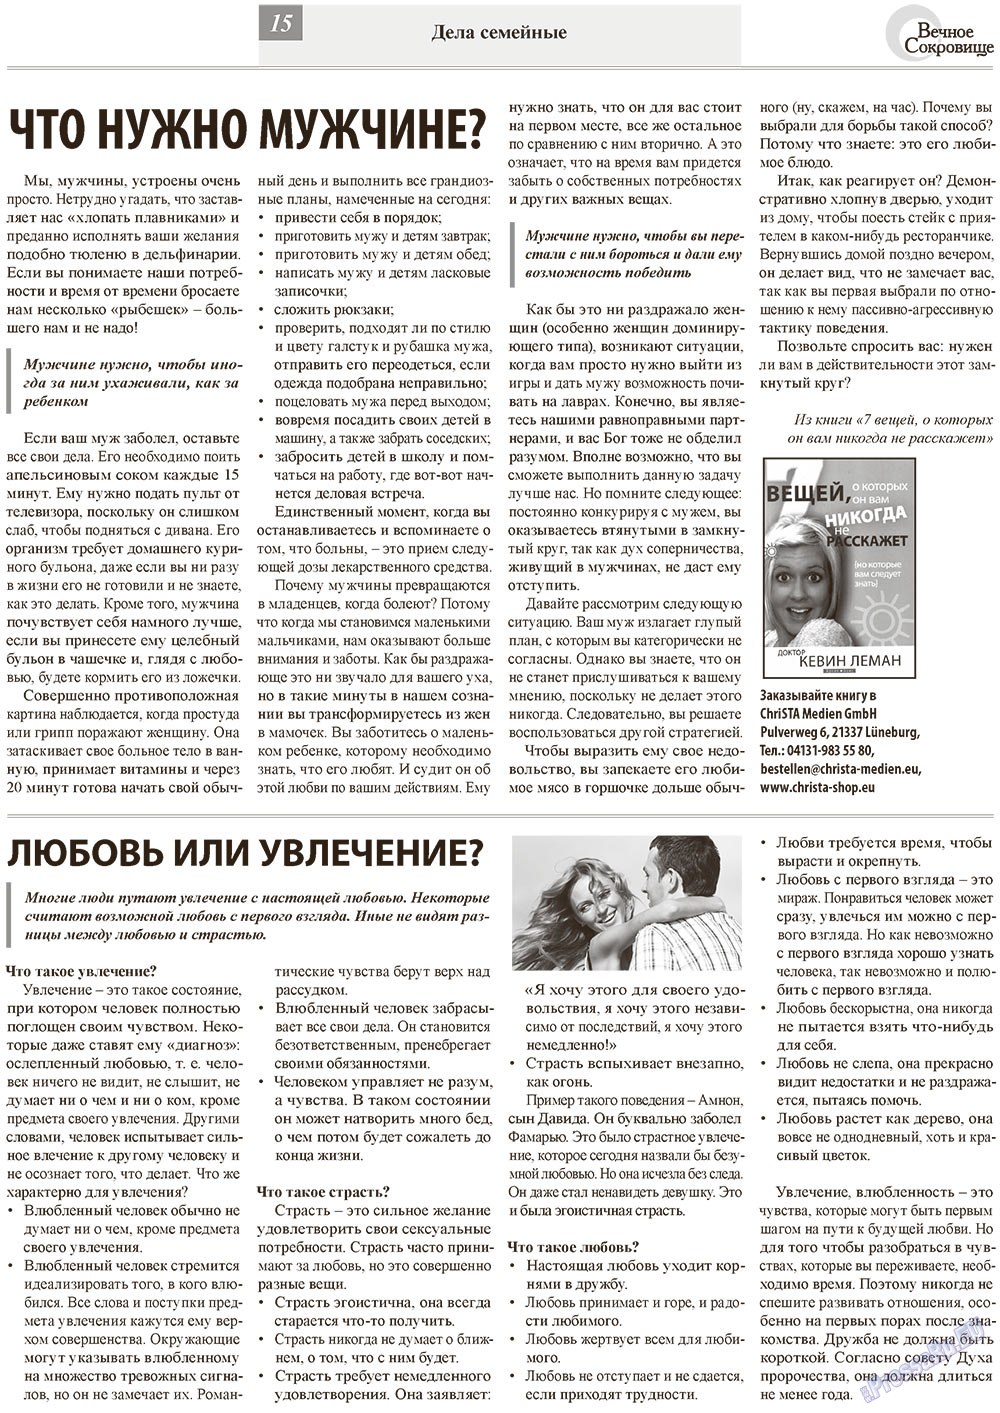 Вечное сокровище, газета. 2013 №1 стр.15